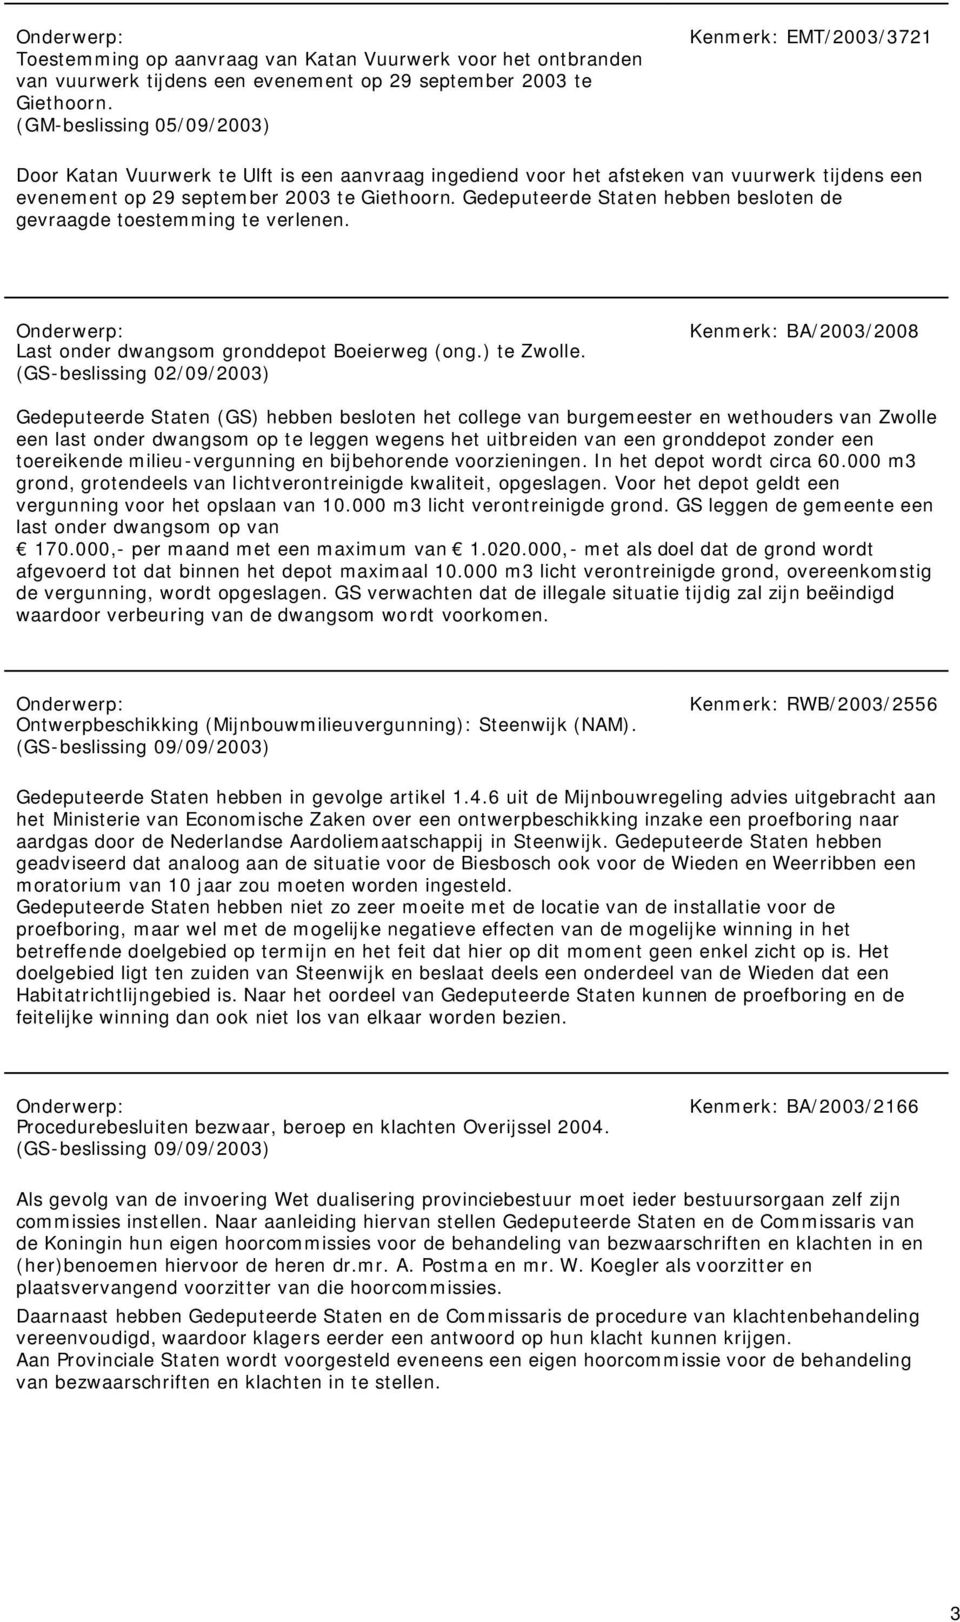 Gedeputeerde Staten hebben besloten de gevraagde toestemming te verlenen. Last onder dwangsom gronddepot Boeierweg (ong.) te Zwolle.